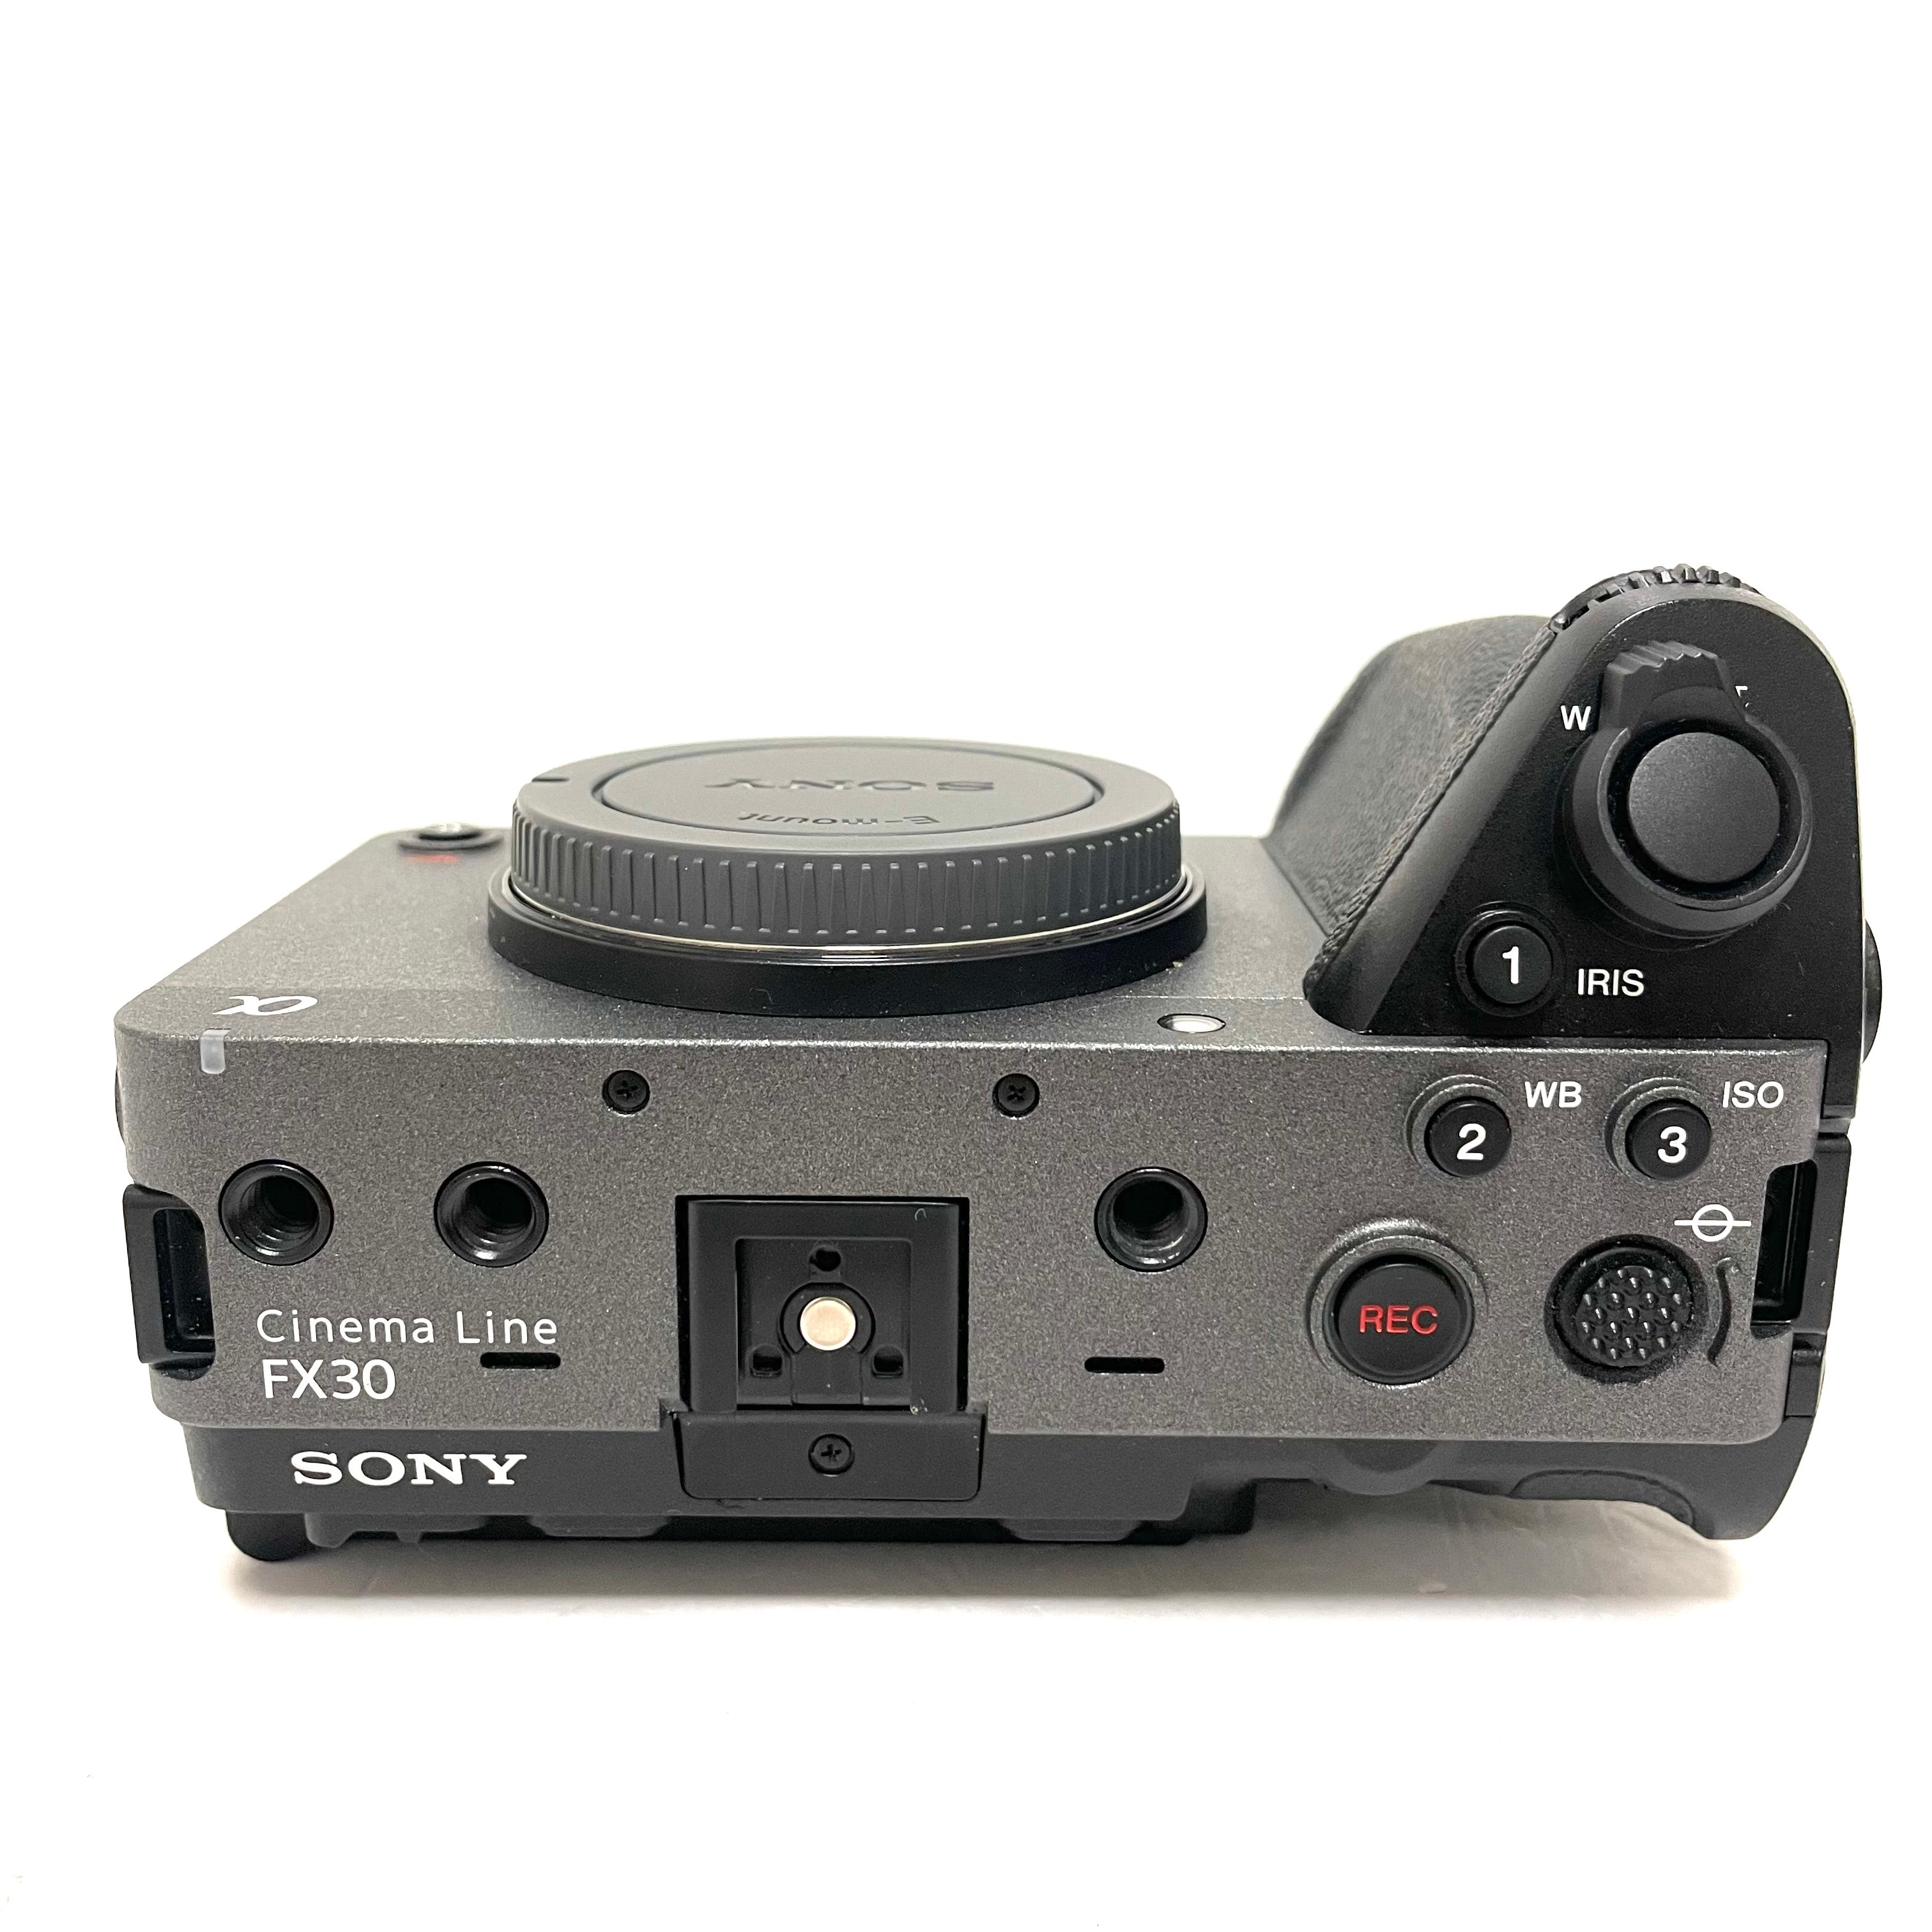 Sony Cinema Line ILME-FX30 + Impugnatura XLR (ILMEFX30) usato Garanzia Sony